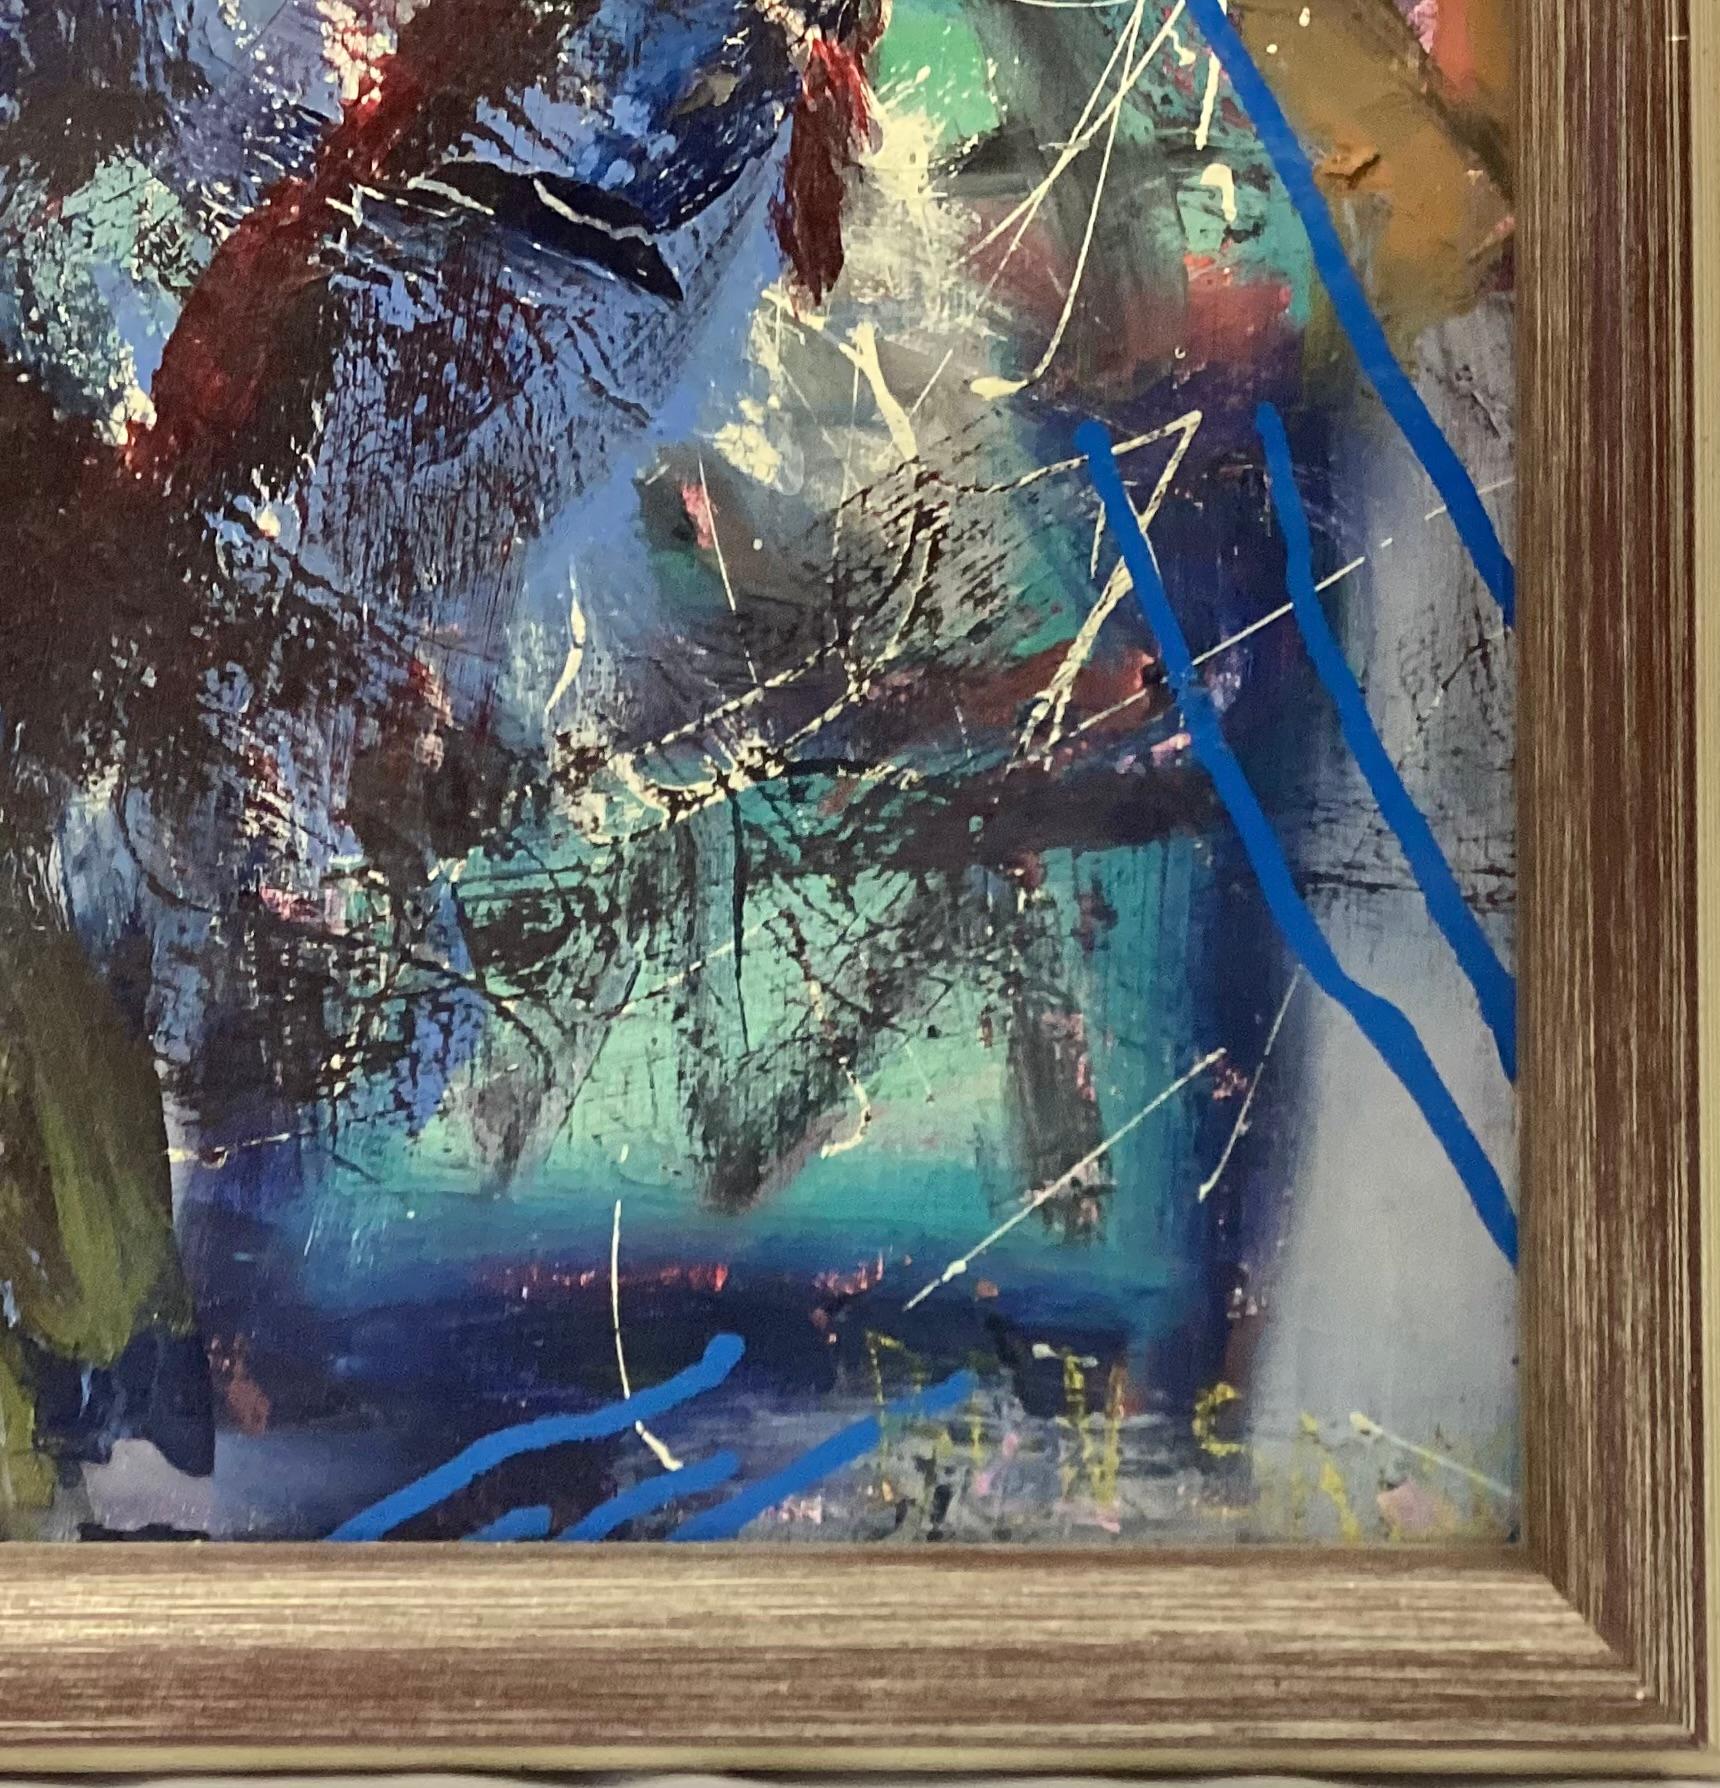 Großes abstraktes Gemälde in Öl auf Leinwand aus dem 20. Jahrhundert. Satte Blautöne, Gelbtöne, Rosatöne. Signatur in der rechten unteren Ecke, noch nicht zu entziffern. 